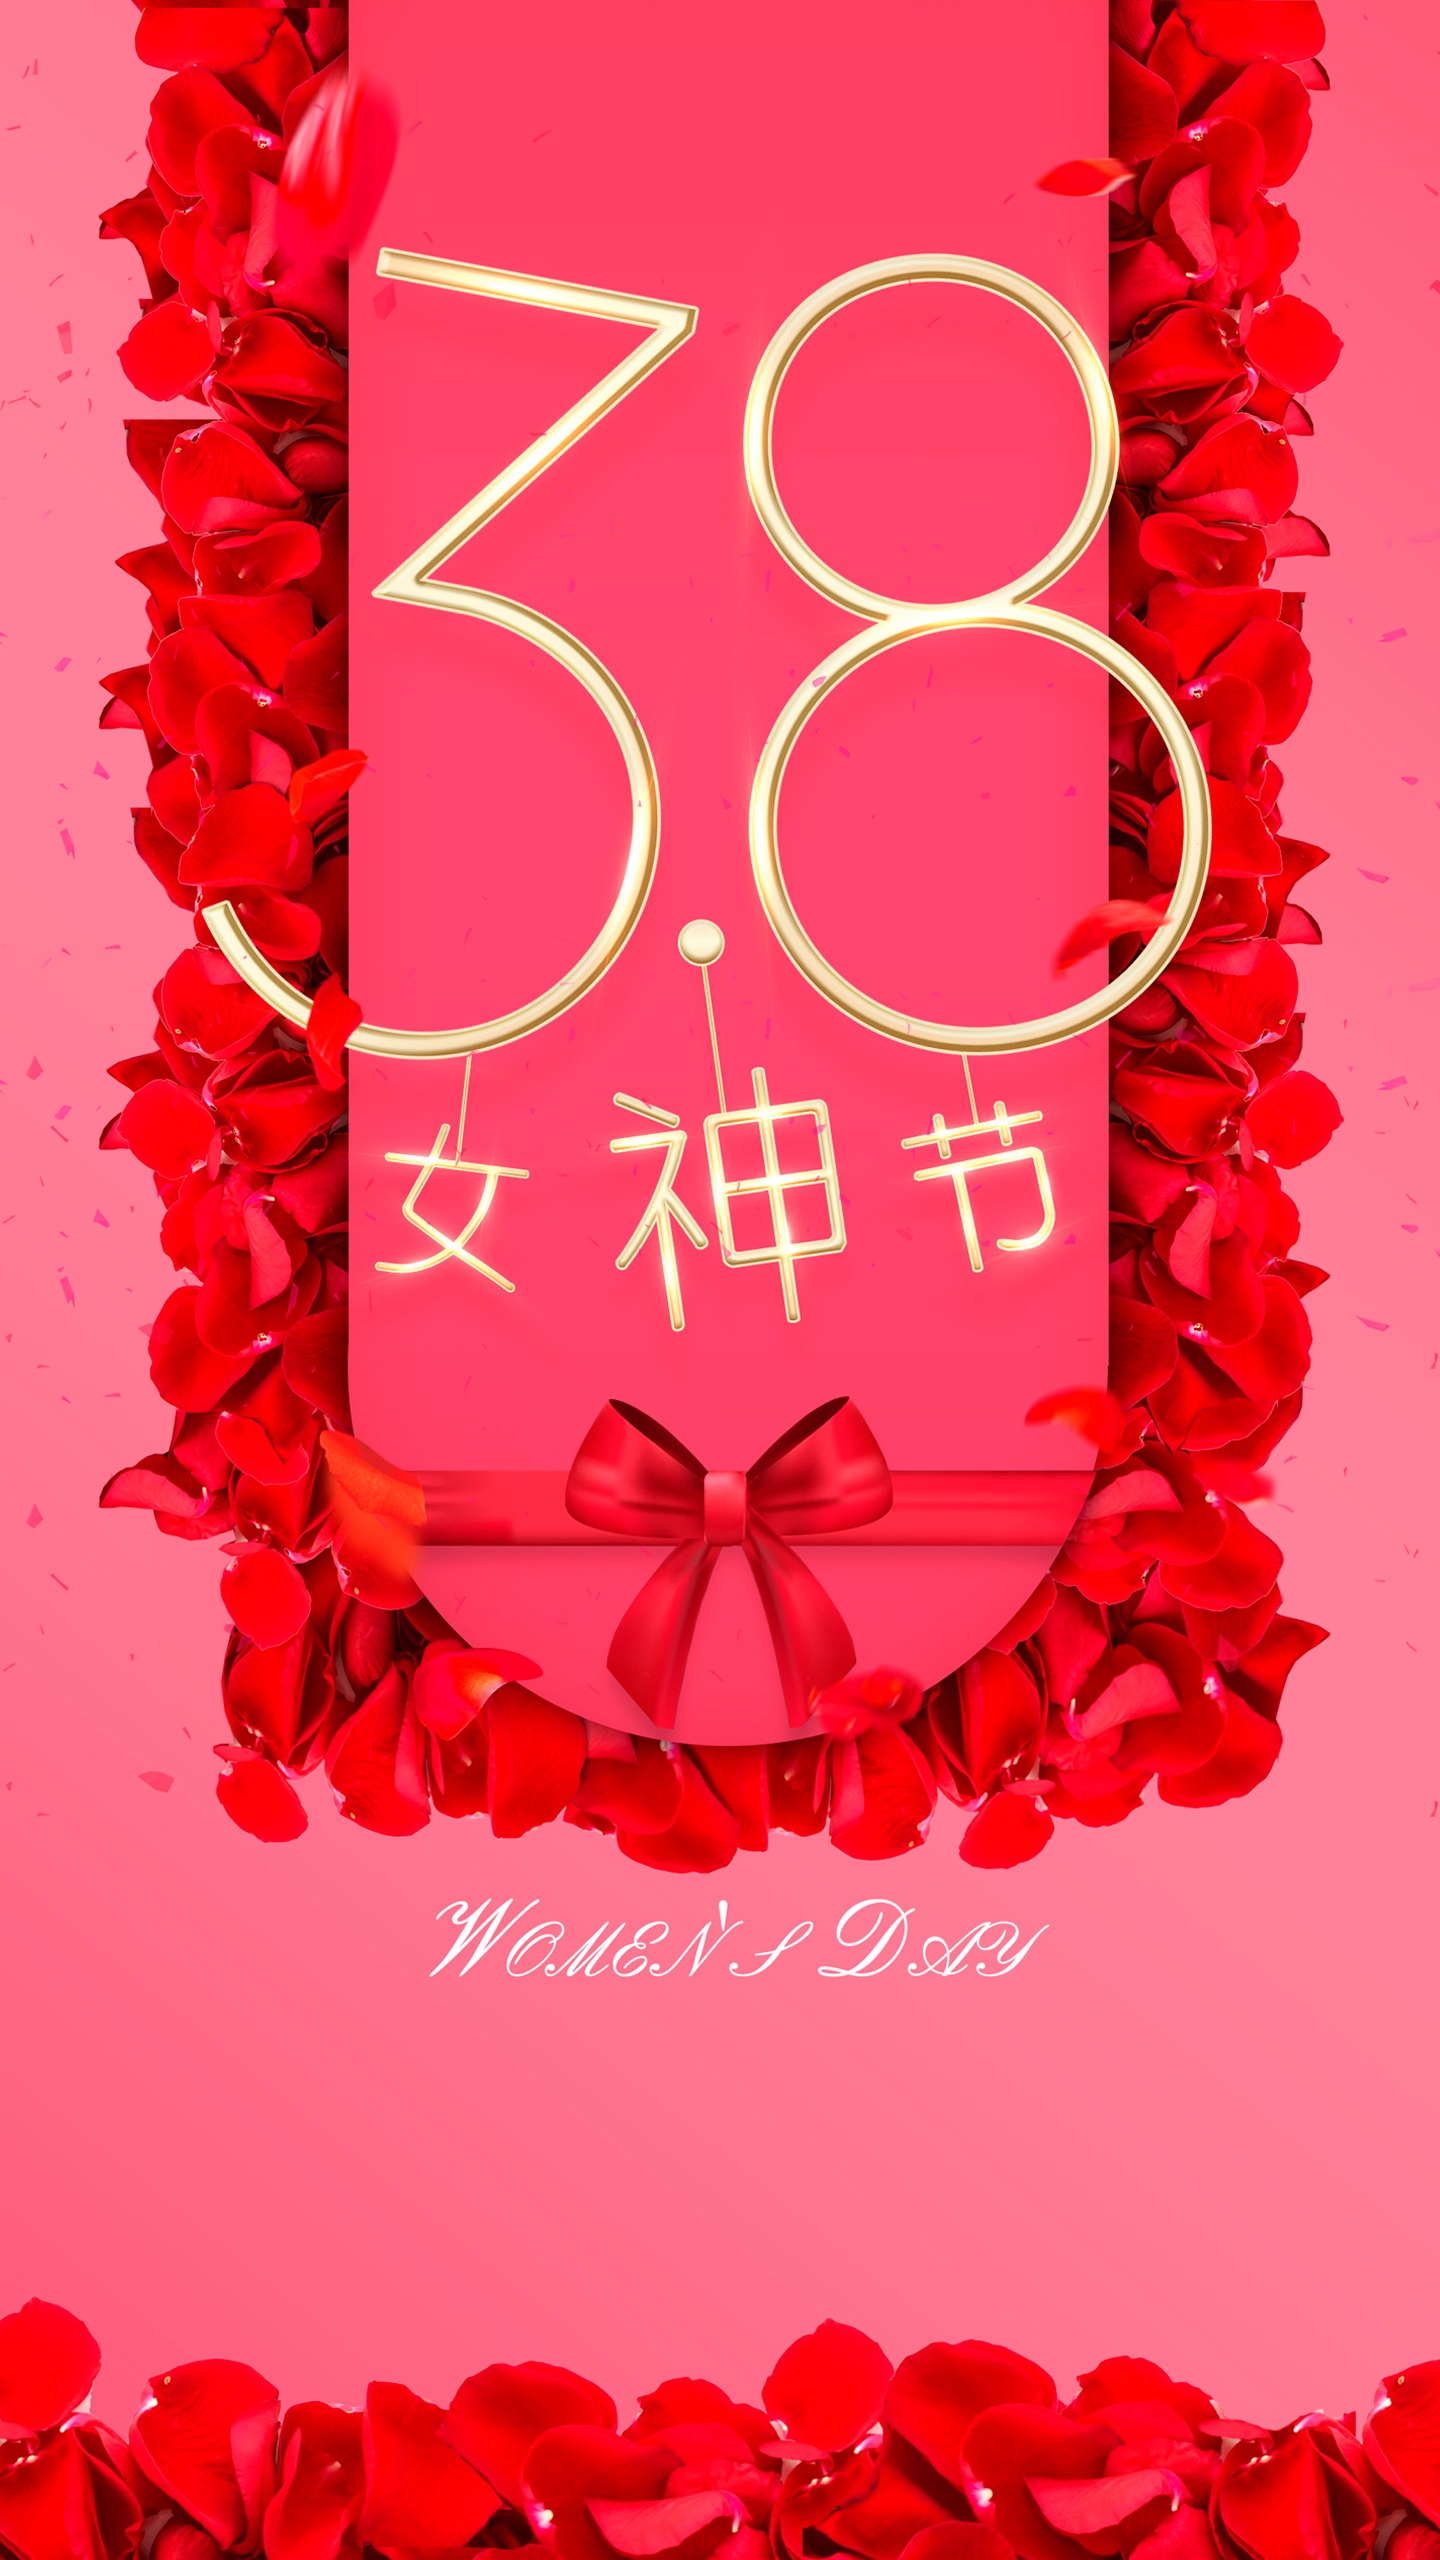 玫瑰 礼物 礼盒 创意妇女节文字手机壁纸图片 38女神节